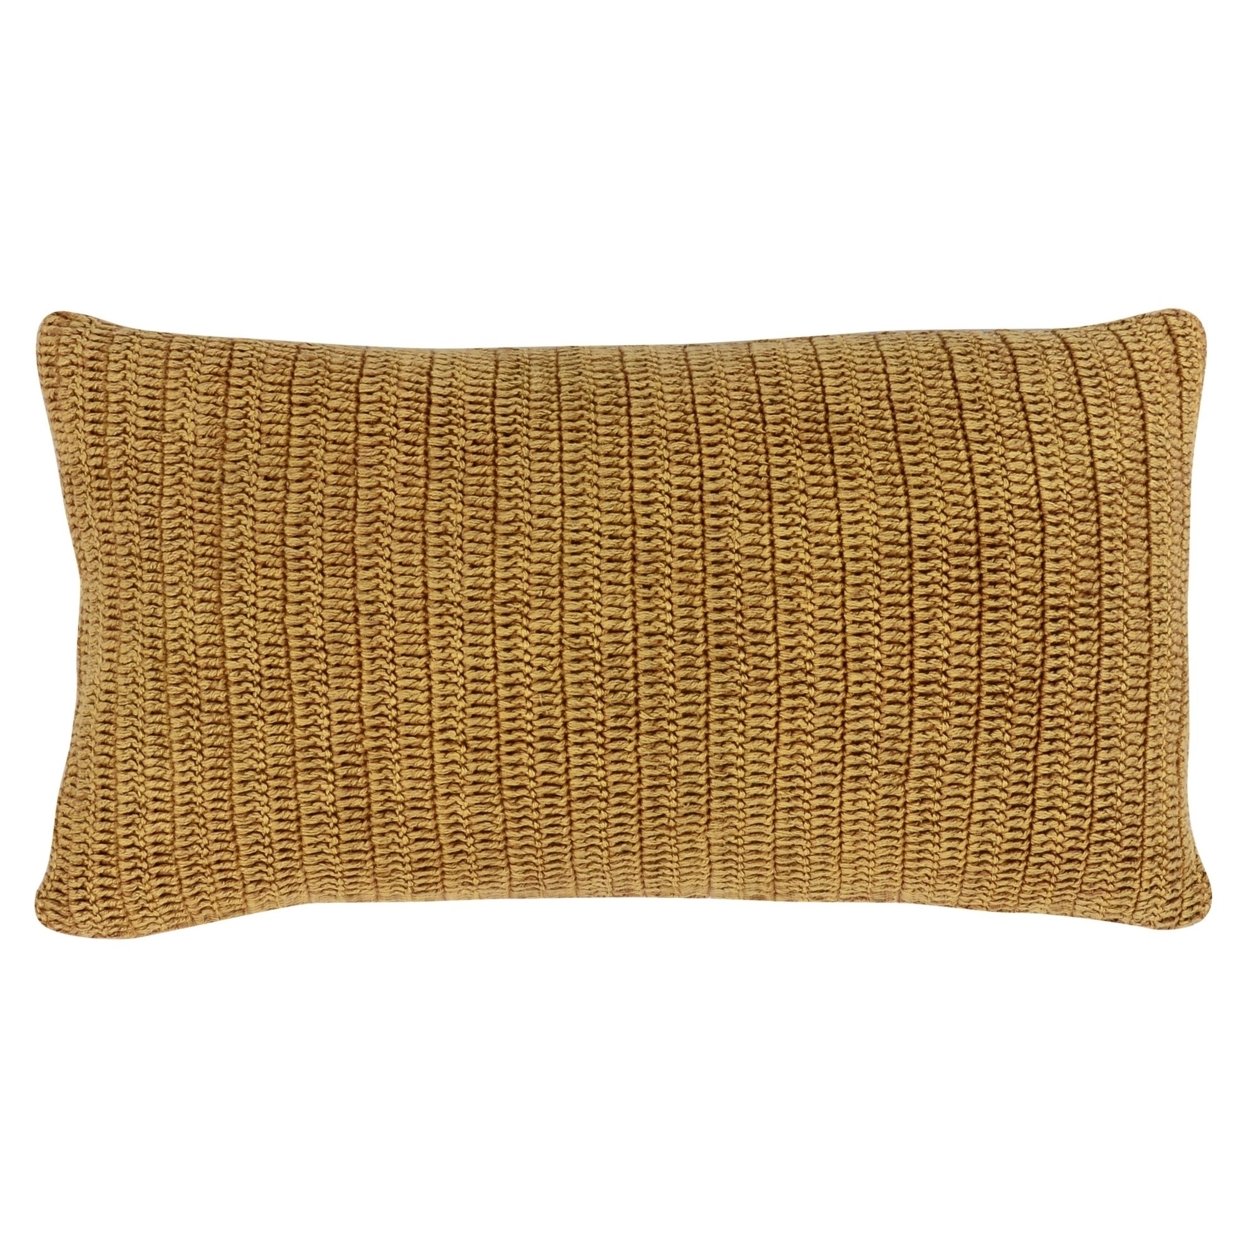 Rosie 14 X 26 Lumbar Accent Throw Pillow, Hand Knitted Designs, Brown Linen- Saltoro Sherpi